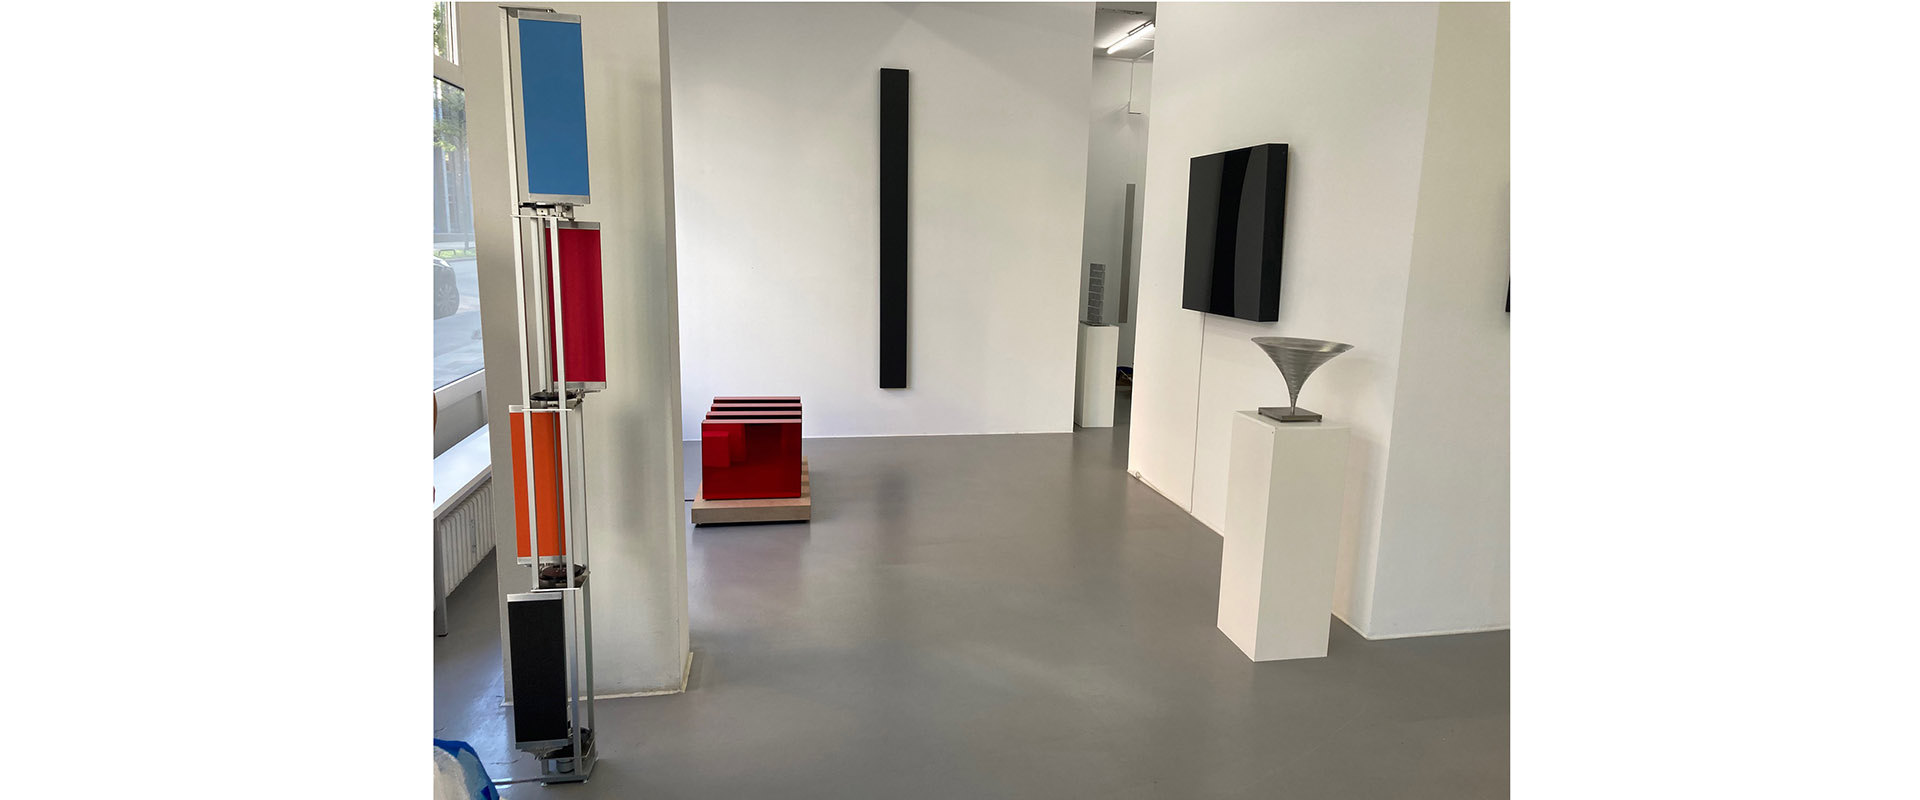 Ausstellungsansicht "The Responsive Eye's First and Second Generation", Galerie Renate Bender 2020. Foto: Bernhard Kreutzer